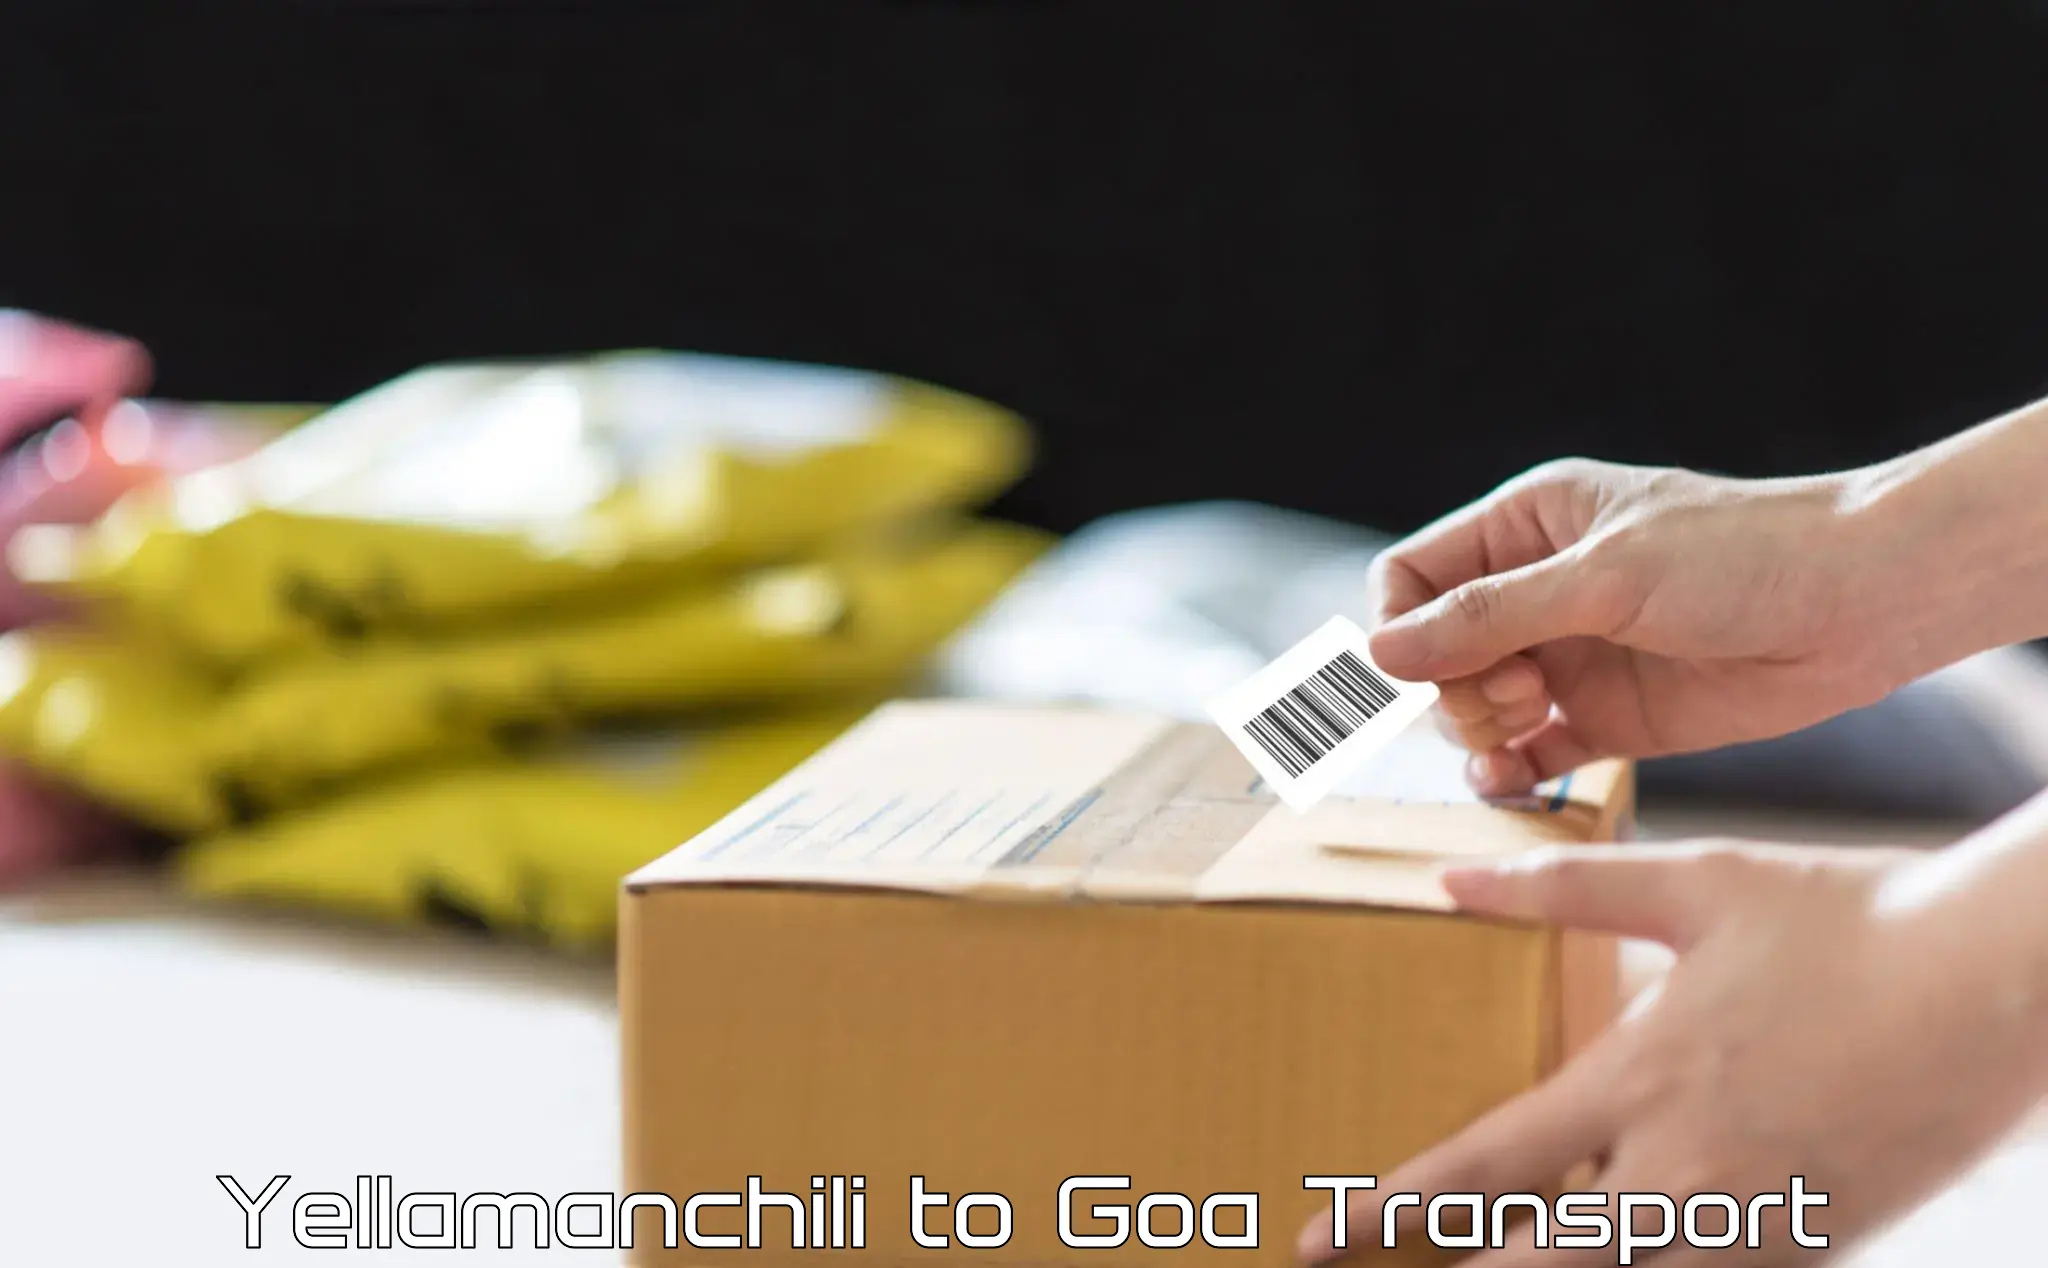 Daily transport service Yellamanchili to NIT Goa